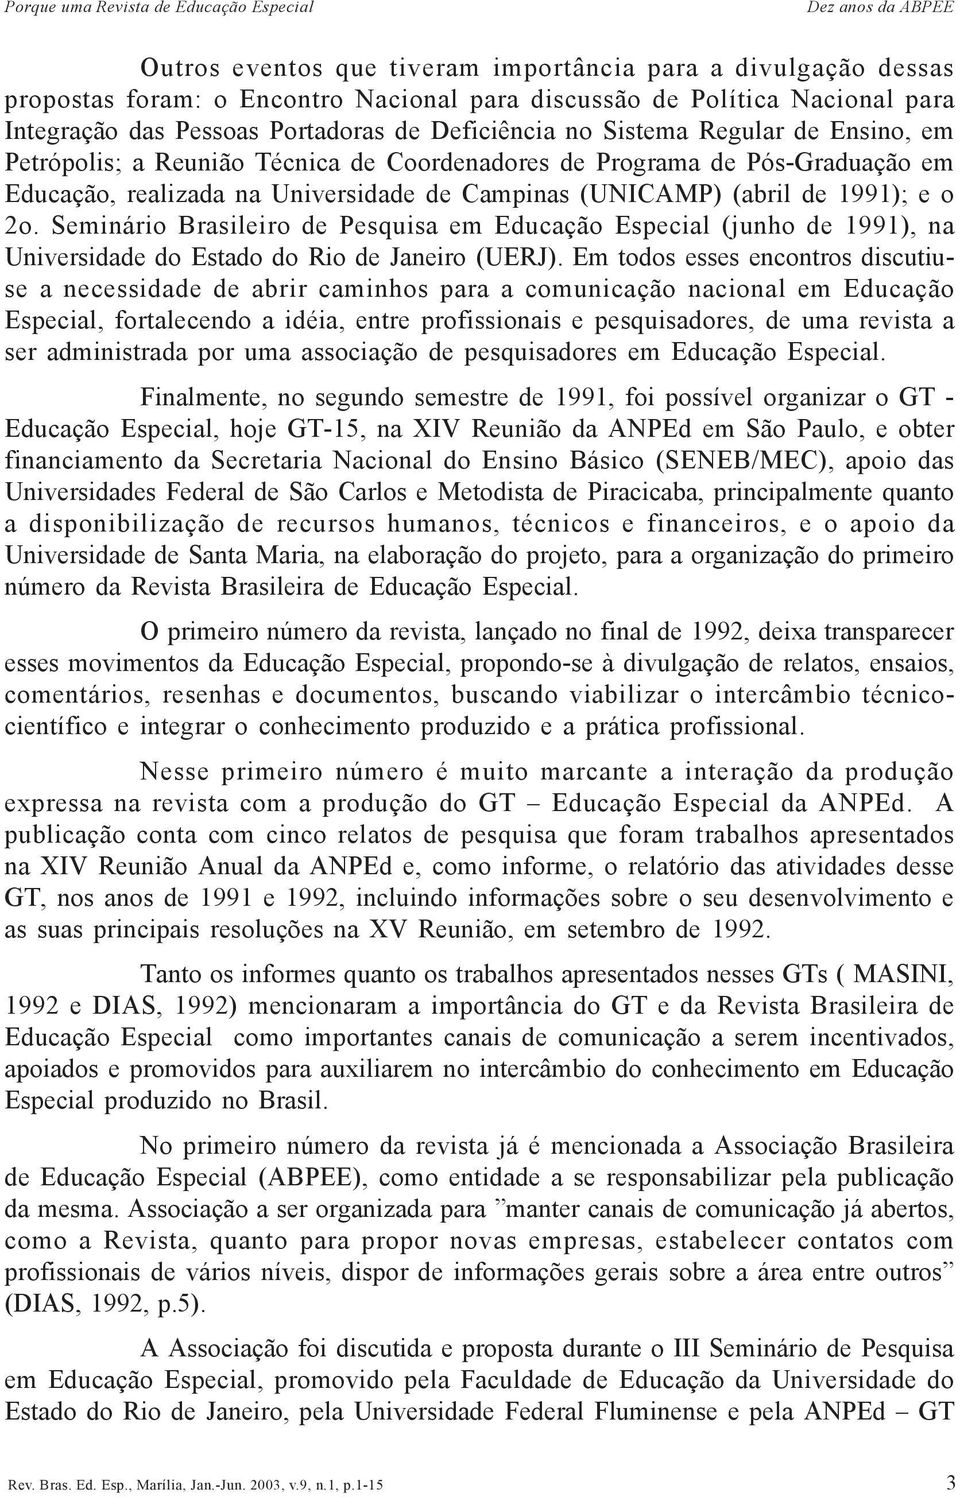 Campinas (UNICAMP) (abril de 1991); e o 2o. Seminário Brasileiro de Pesquisa em Educação Especial (junho de 1991), na Universidade do Estado do Rio de Janeiro (UERJ).